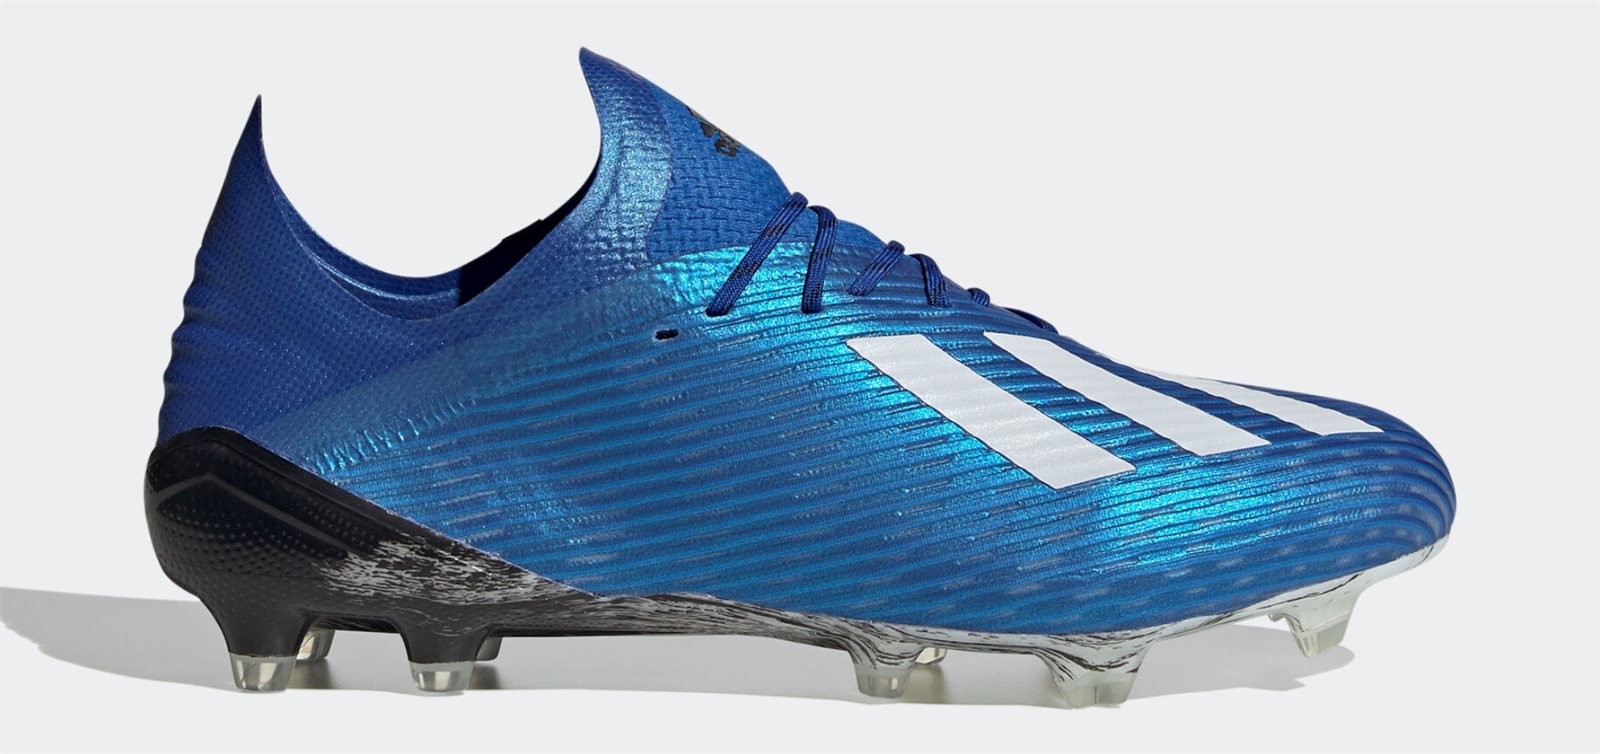 Có rất nhiều cầu thủ đội hình Manchester United lựa chọn dòng giày siêu nhẹ Adidas X